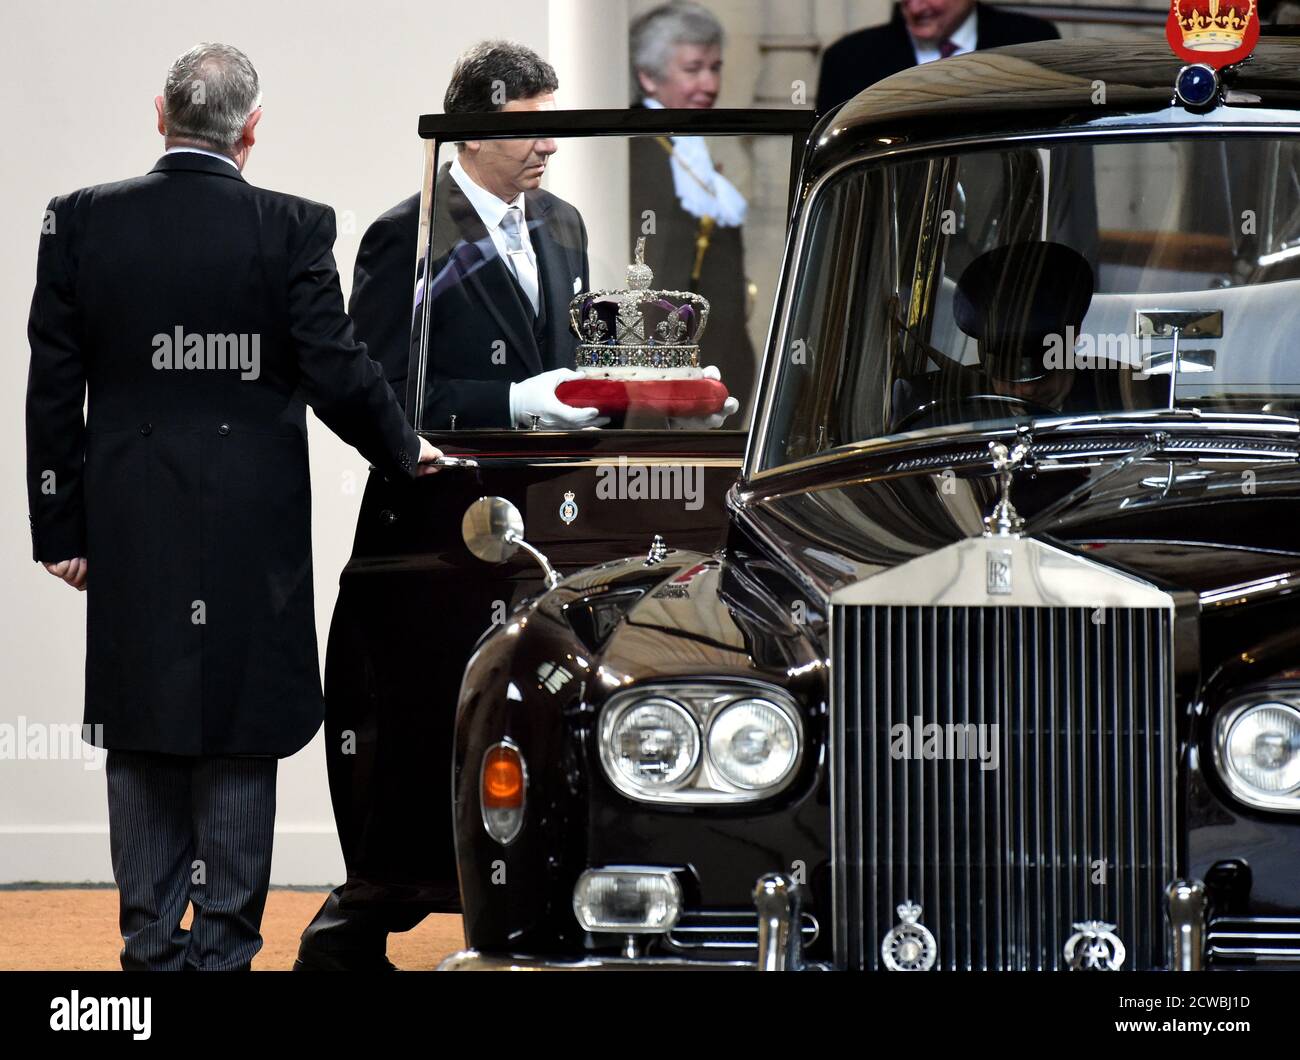 Photographie de la régalia royale transportée dans l'État ouverture du Parlement du Royaume-Uni, 19 décembre 2019 Banque D'Images